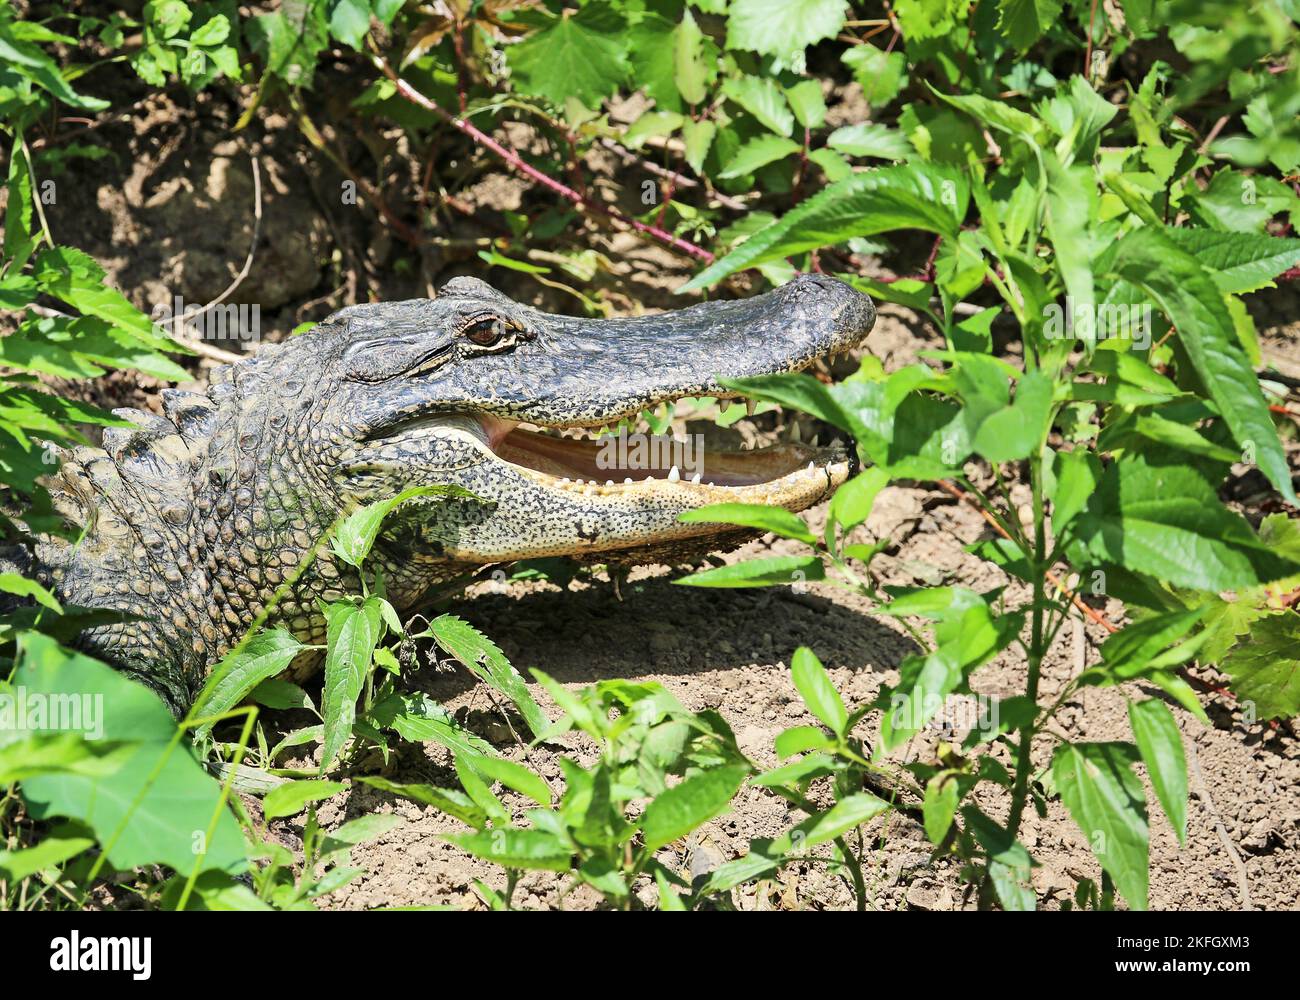 Alligator se cachant en vert - Louisiane Banque D'Images